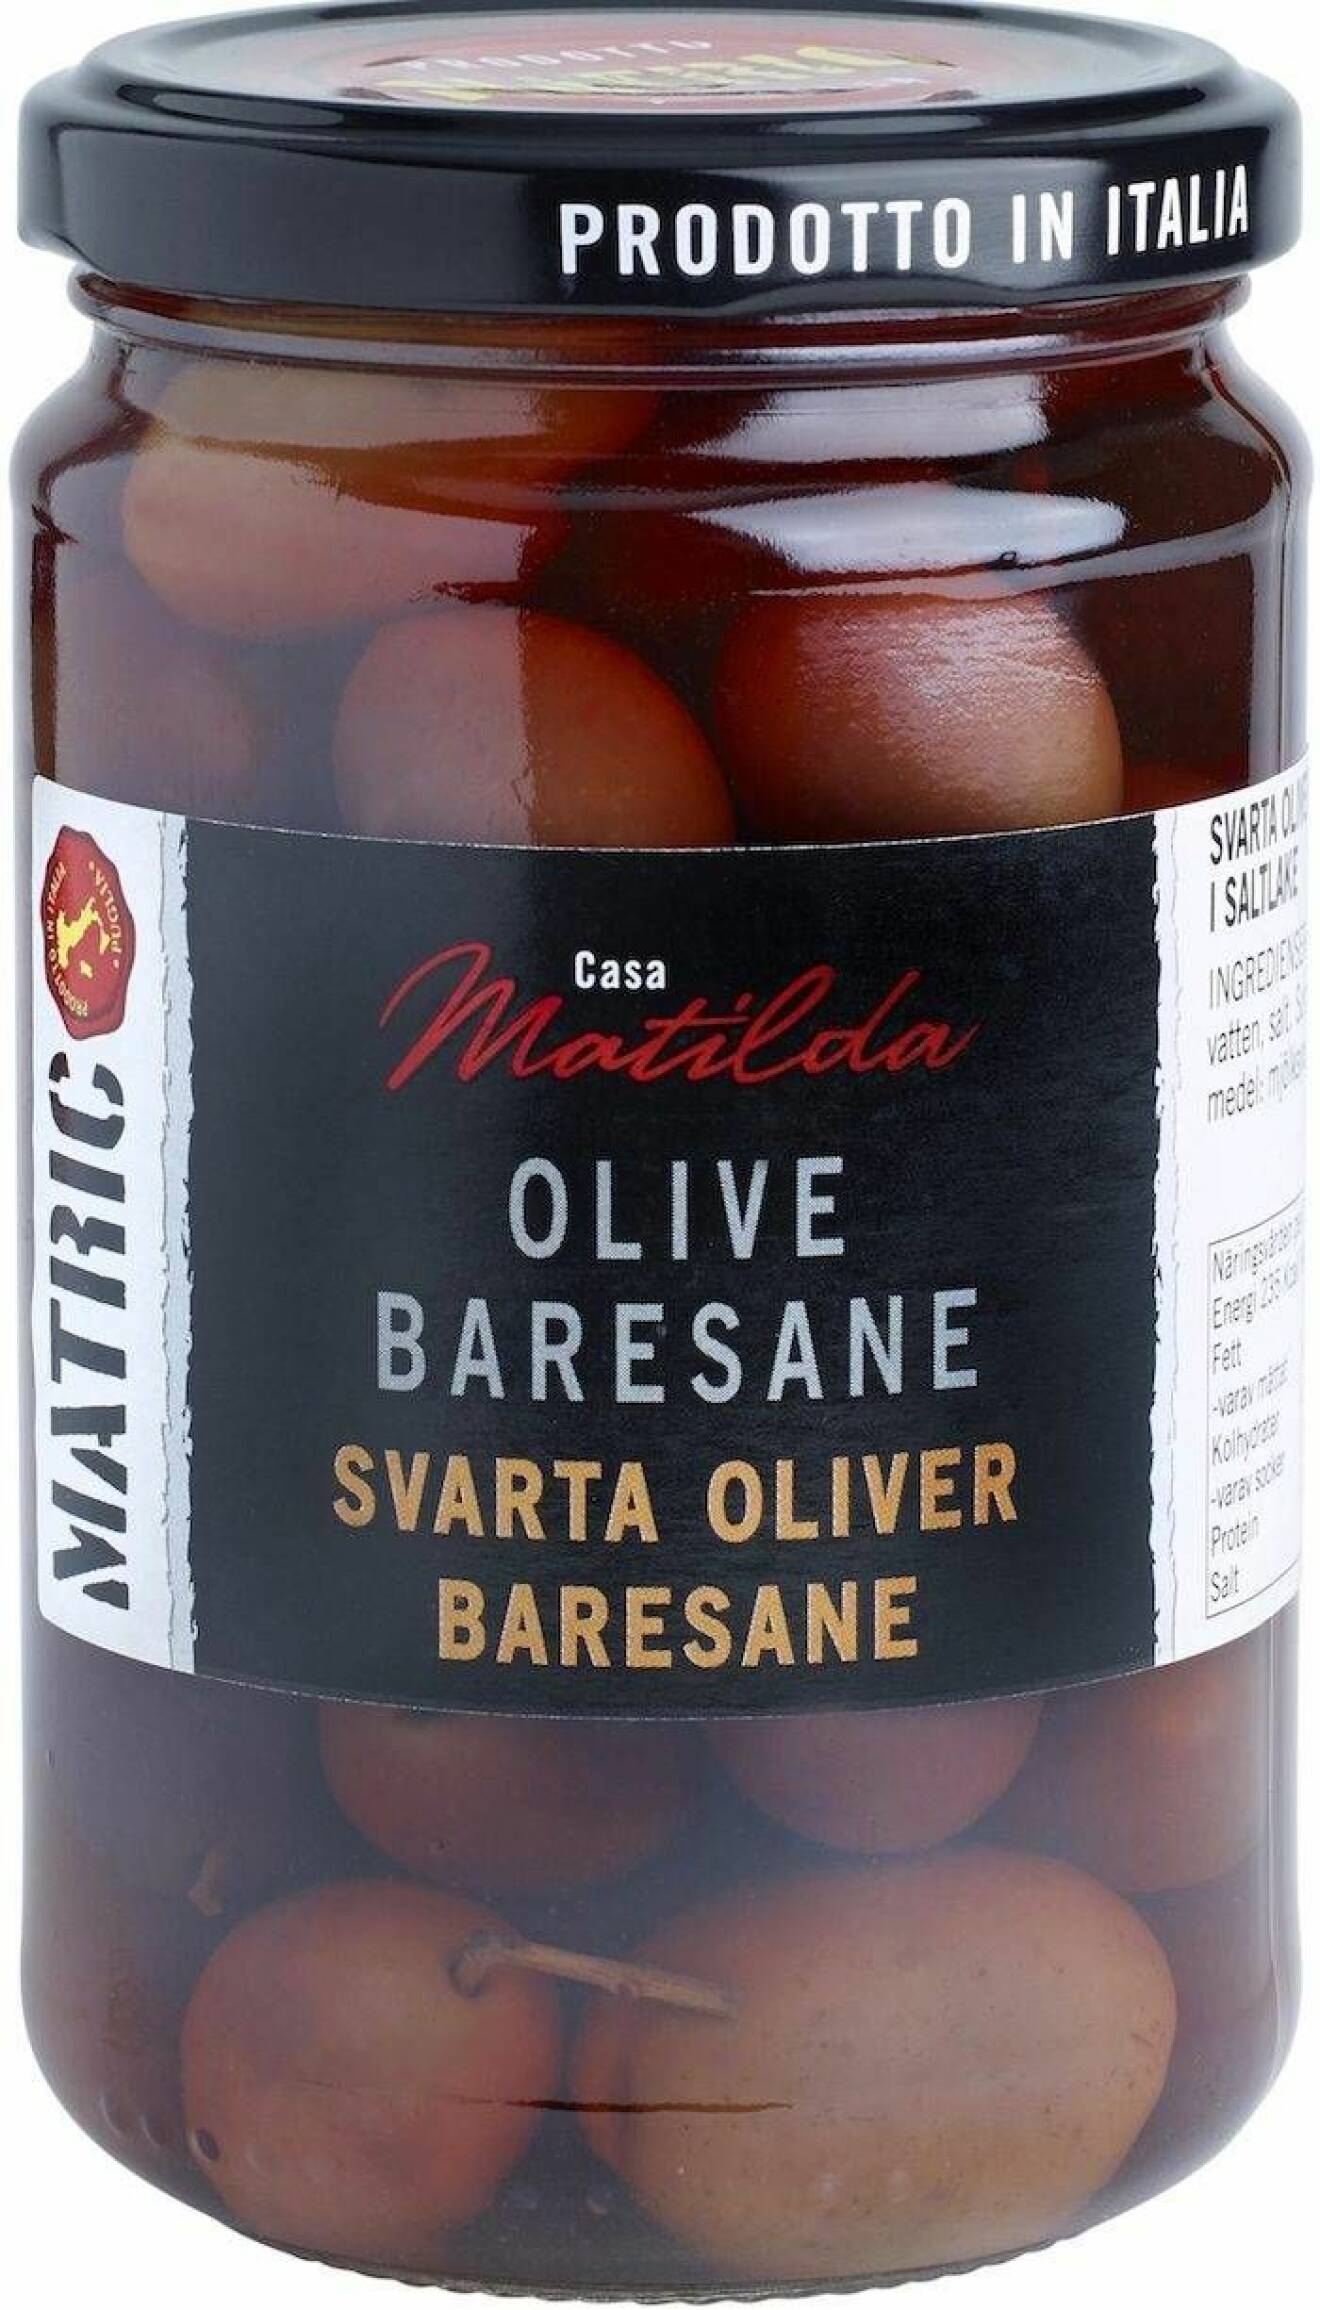 Matrics Olive Baresane.